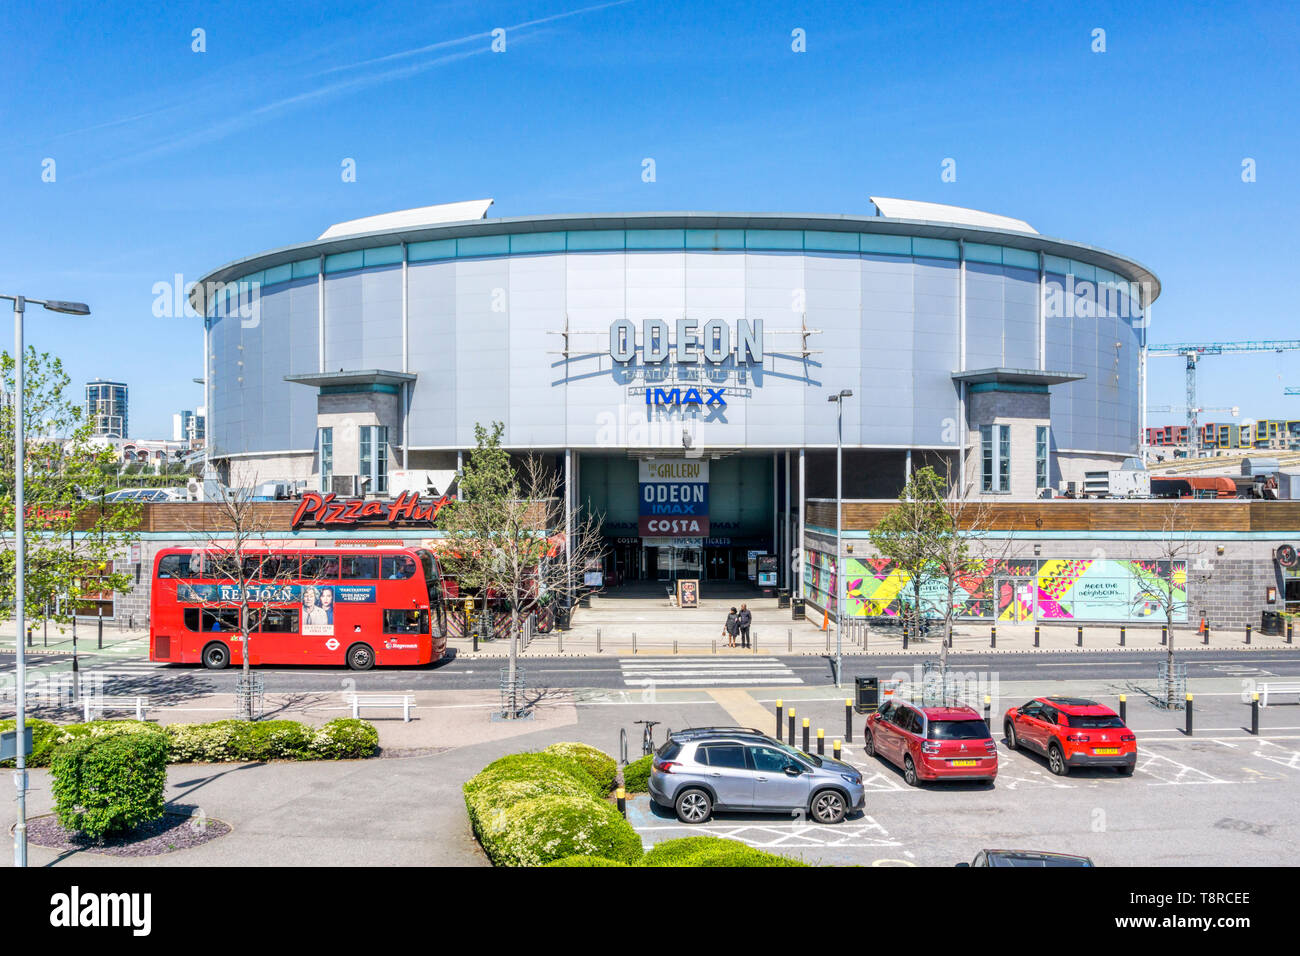 L' Odeon Greenwich cinema Imax al Millennium Leisure Park, Bugsby modo sulla penisola di Greenwich. Foto Stock